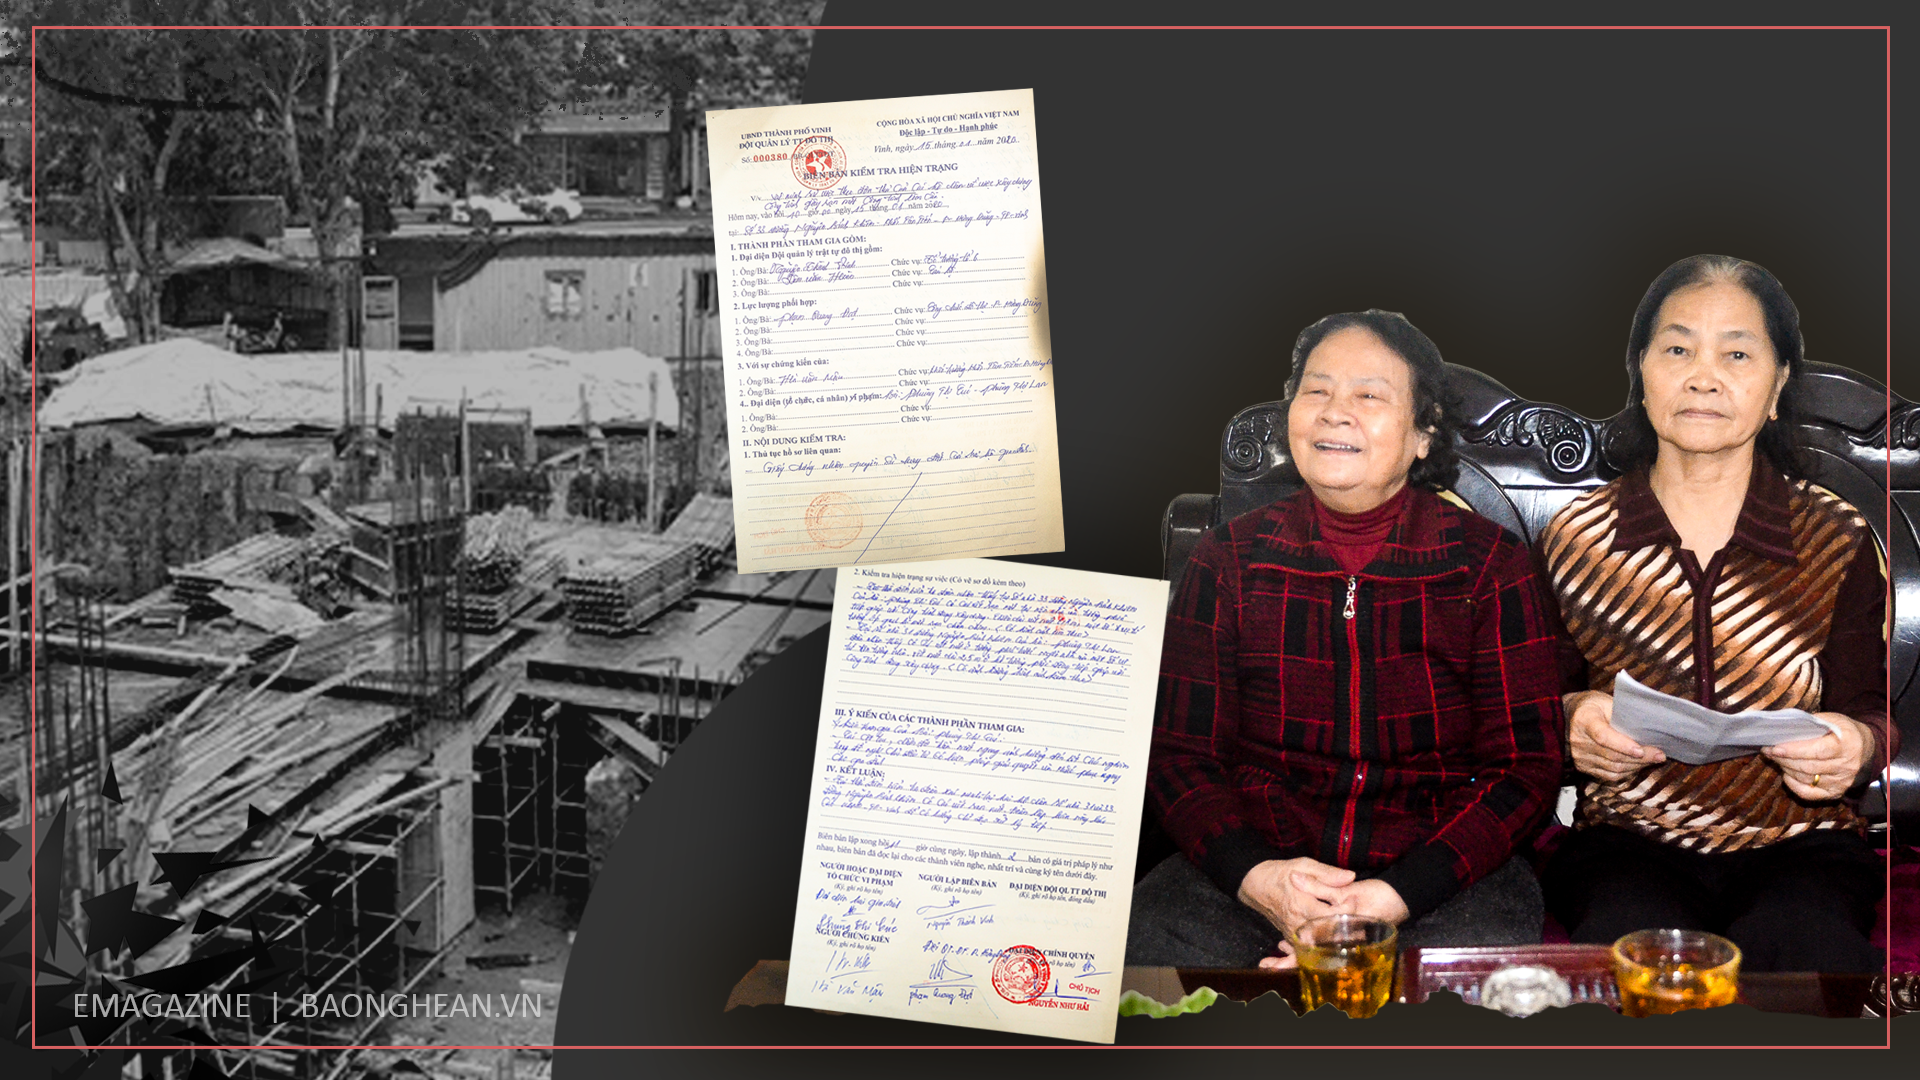 Bà Phùng Thị Cúc (bên phải) trao đổi với PV Báo Nghệ An; Biên bản số 000380/BB-QL.TTĐT ngày 15/1/2020 của Đội Quản lý trật tự đô thị TP. Vinh.